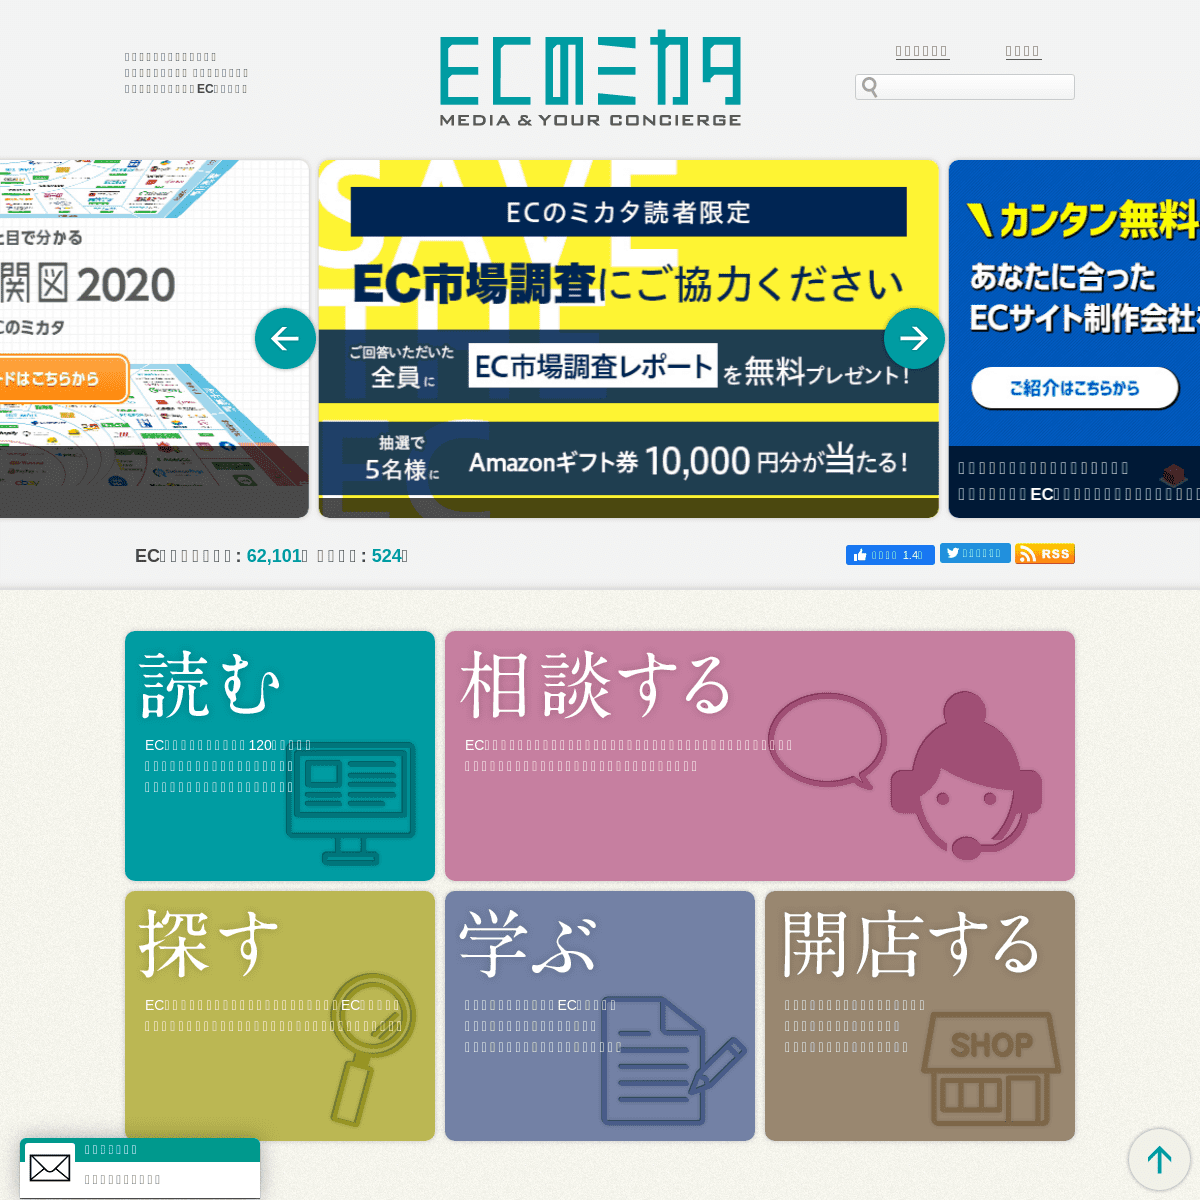 A complete backup of ecnomikata.com